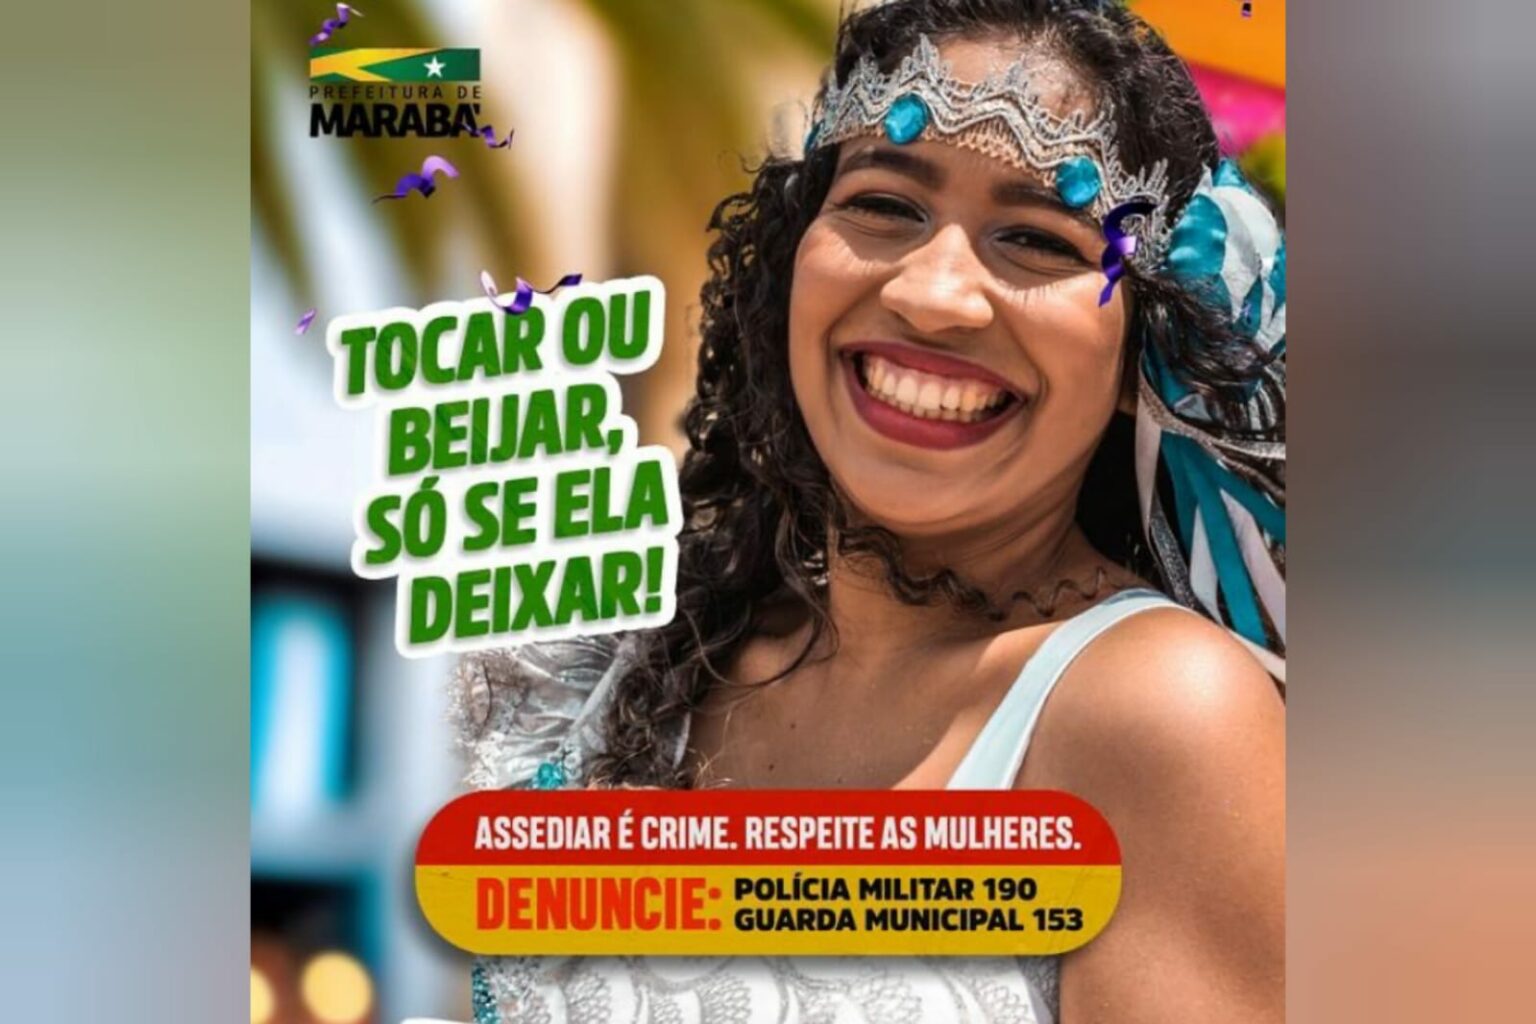 Prefeitura intensifica campanha contra o assédio sexual durante o carnaval em Marabá